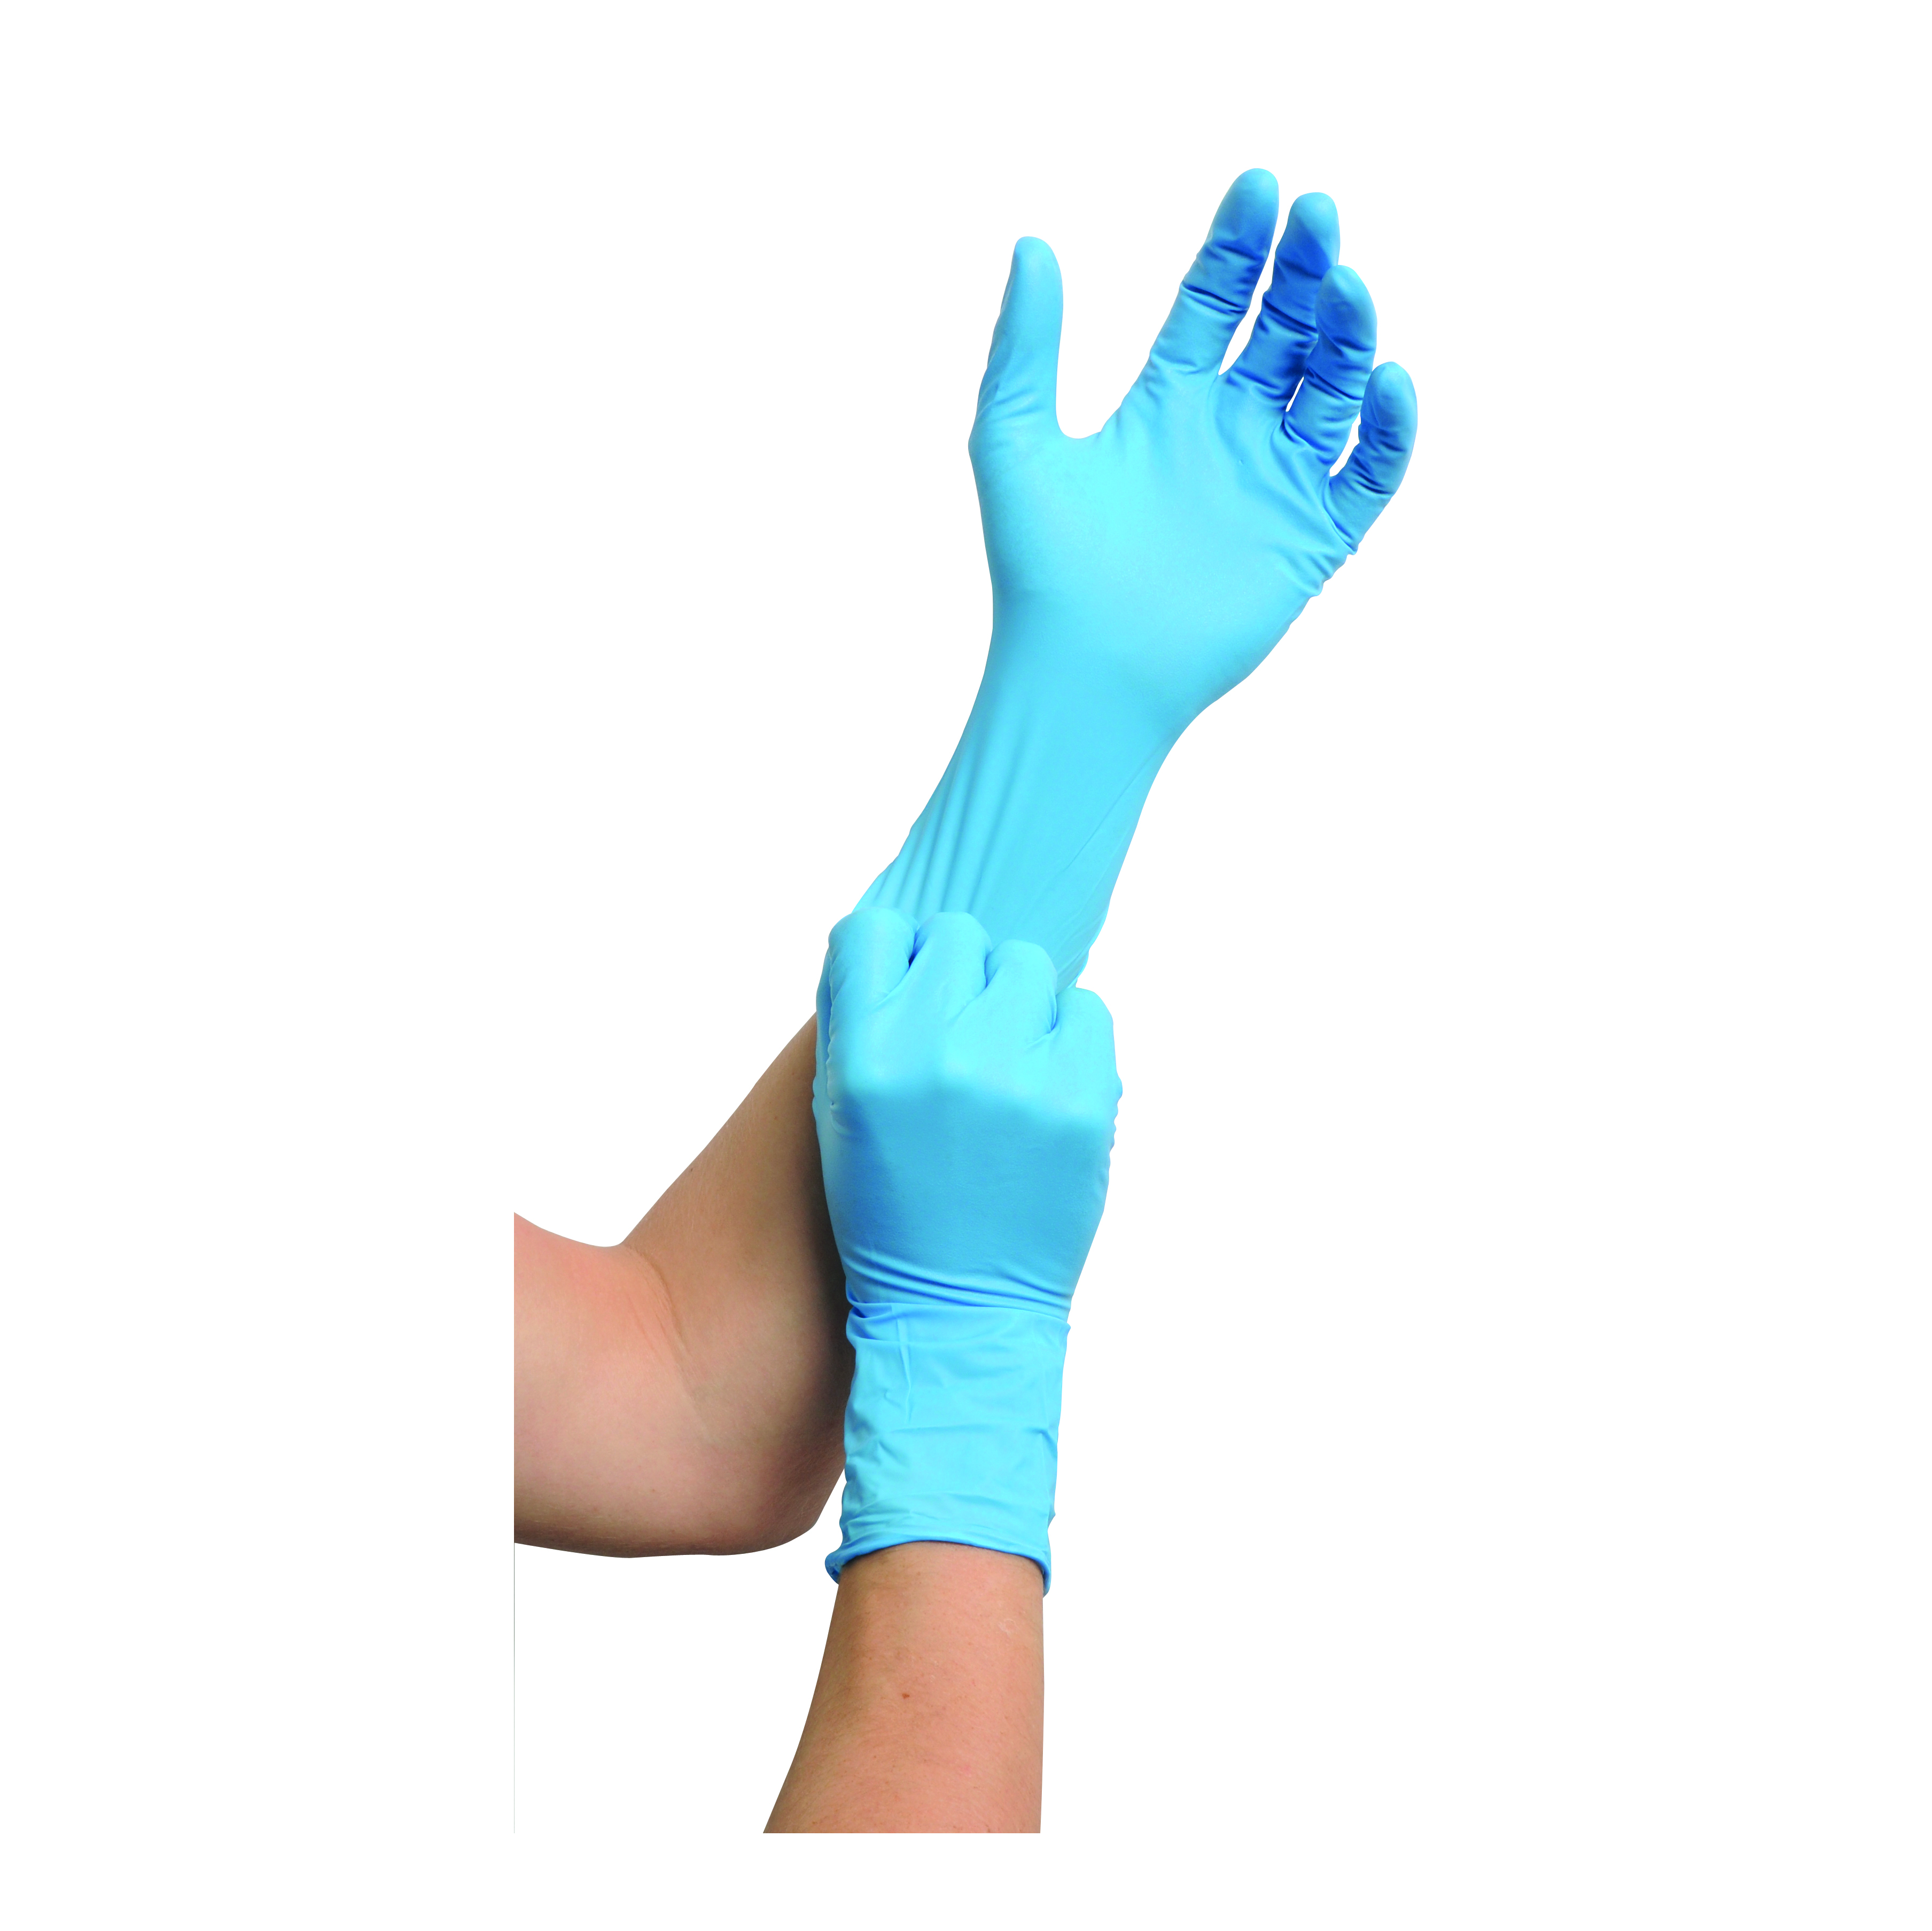 MaiMed nitril ST PF Einmalchemikalienschutzhandschuhe, Gr. S, blau, ungepudert